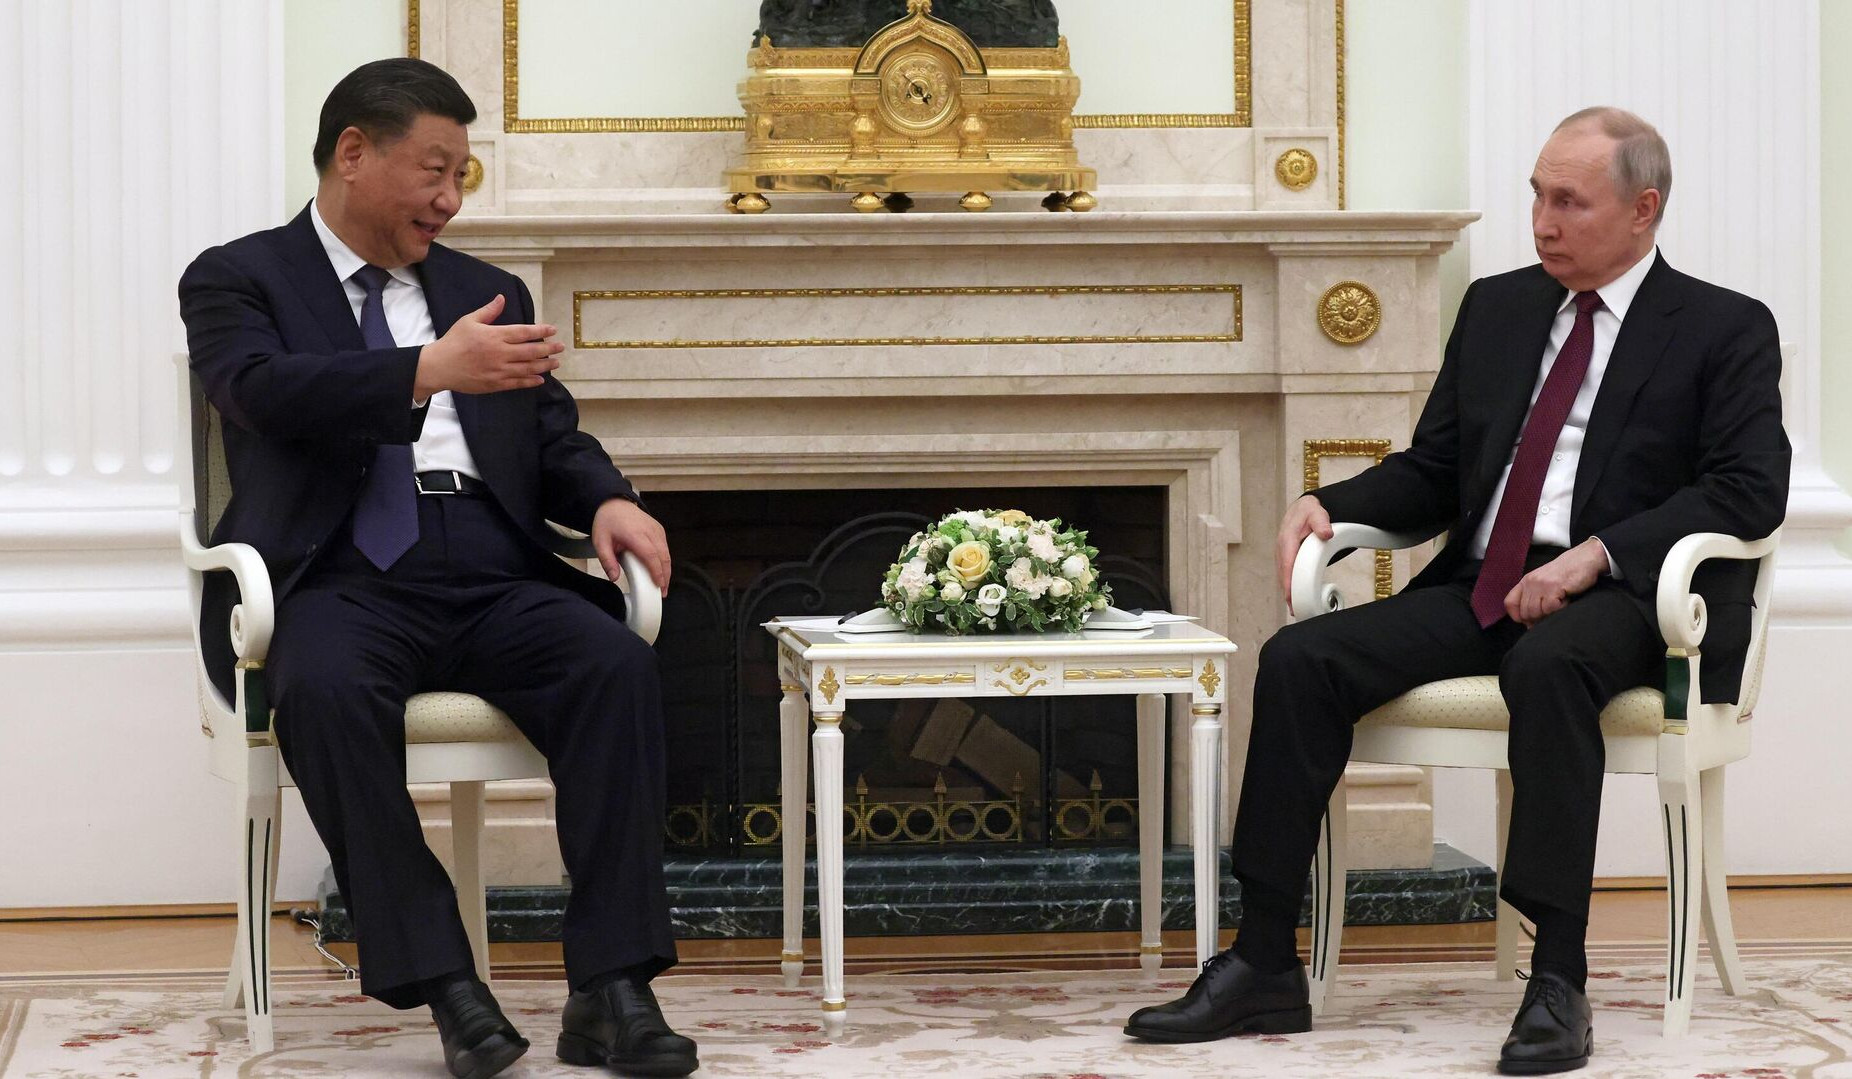 Неформальные переговоры Путина и Си Цзиньпина длились 4,5 часа